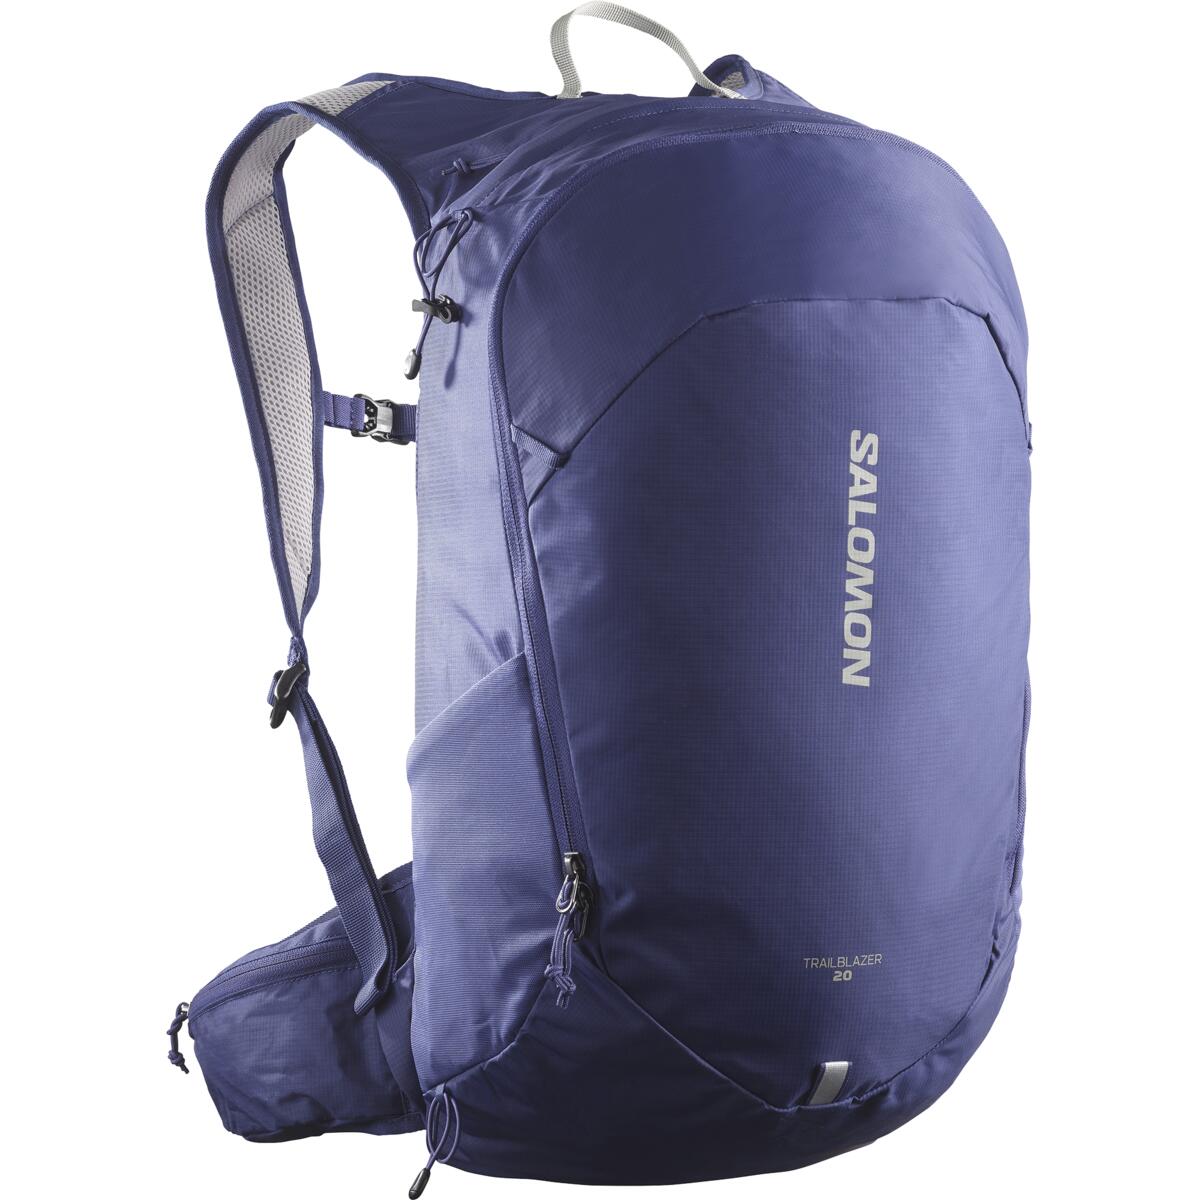 Turistický batohy Salomon Trailblazer 20 Veľkosť: Univerzálna veľkosť